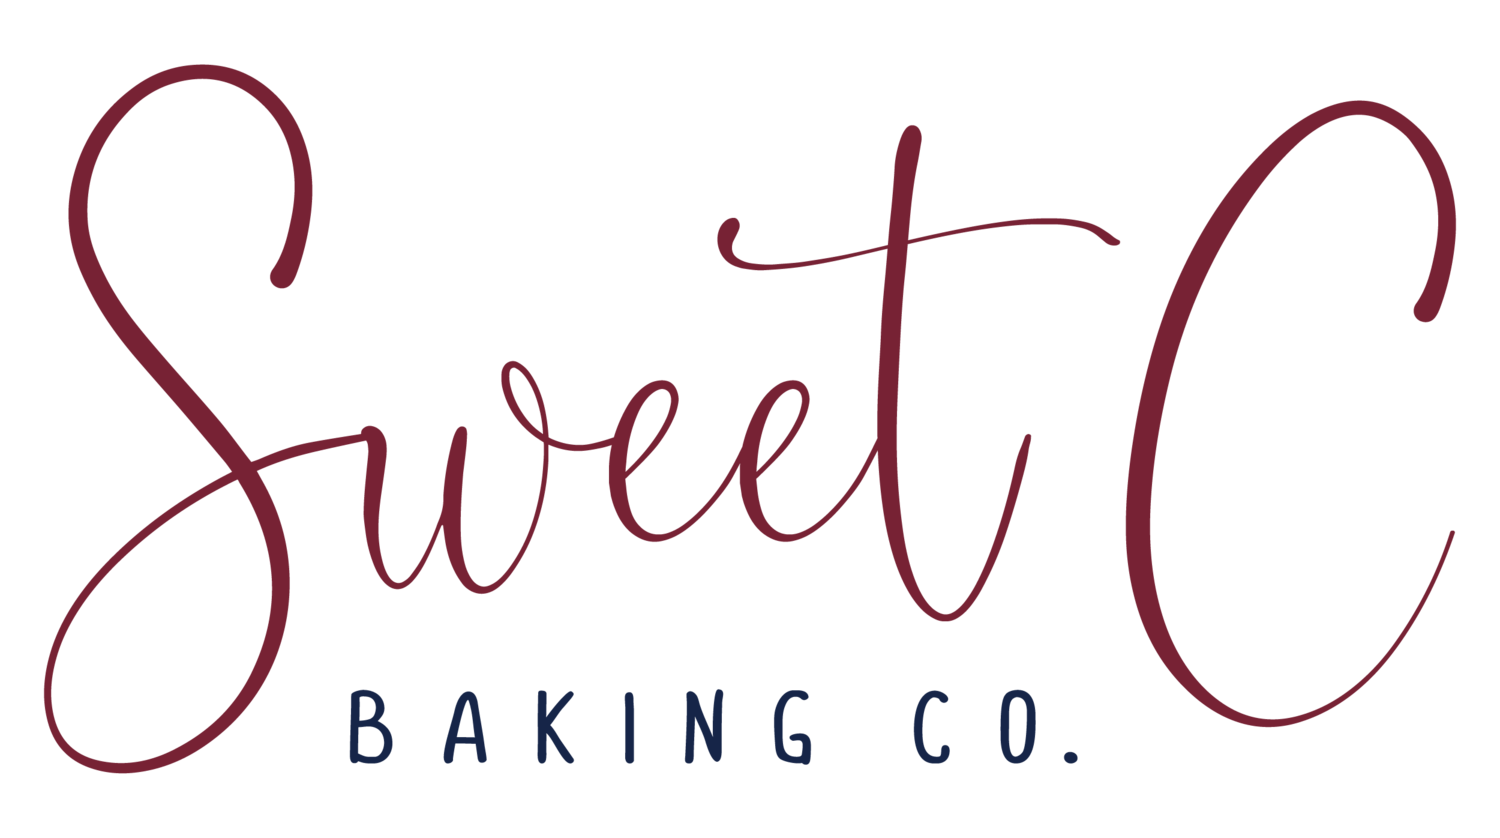 Sweet C Baking Co.